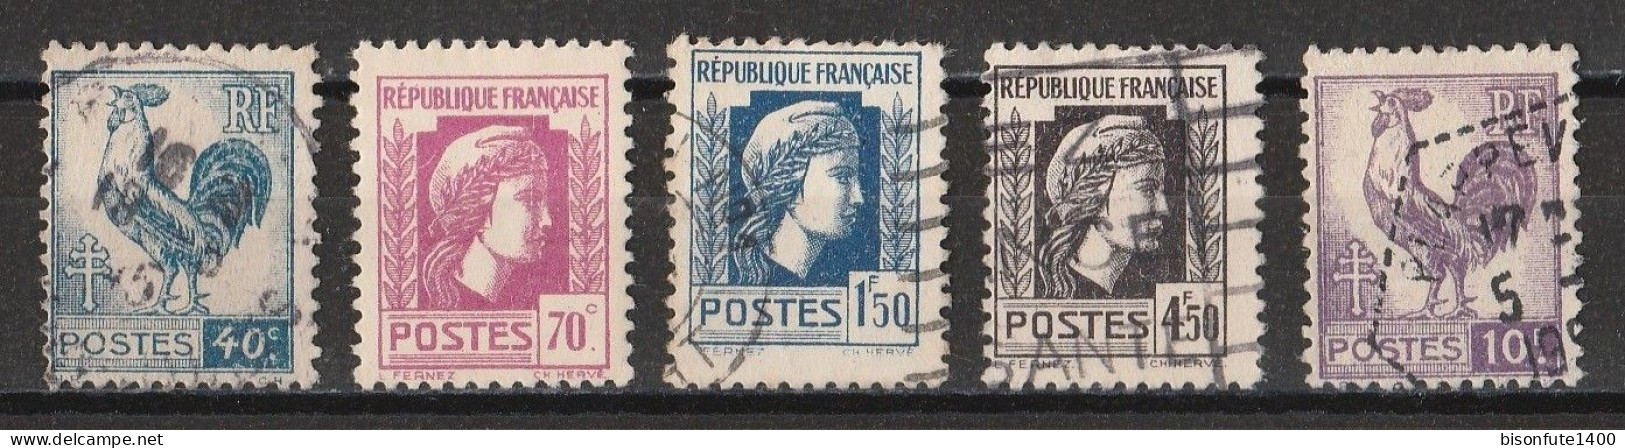 France 1944 : Timbres Yvert & Tellier N° 632 - 635 - 639 - 644 Et 646 Avec Oblitérations Rondes. - Usados